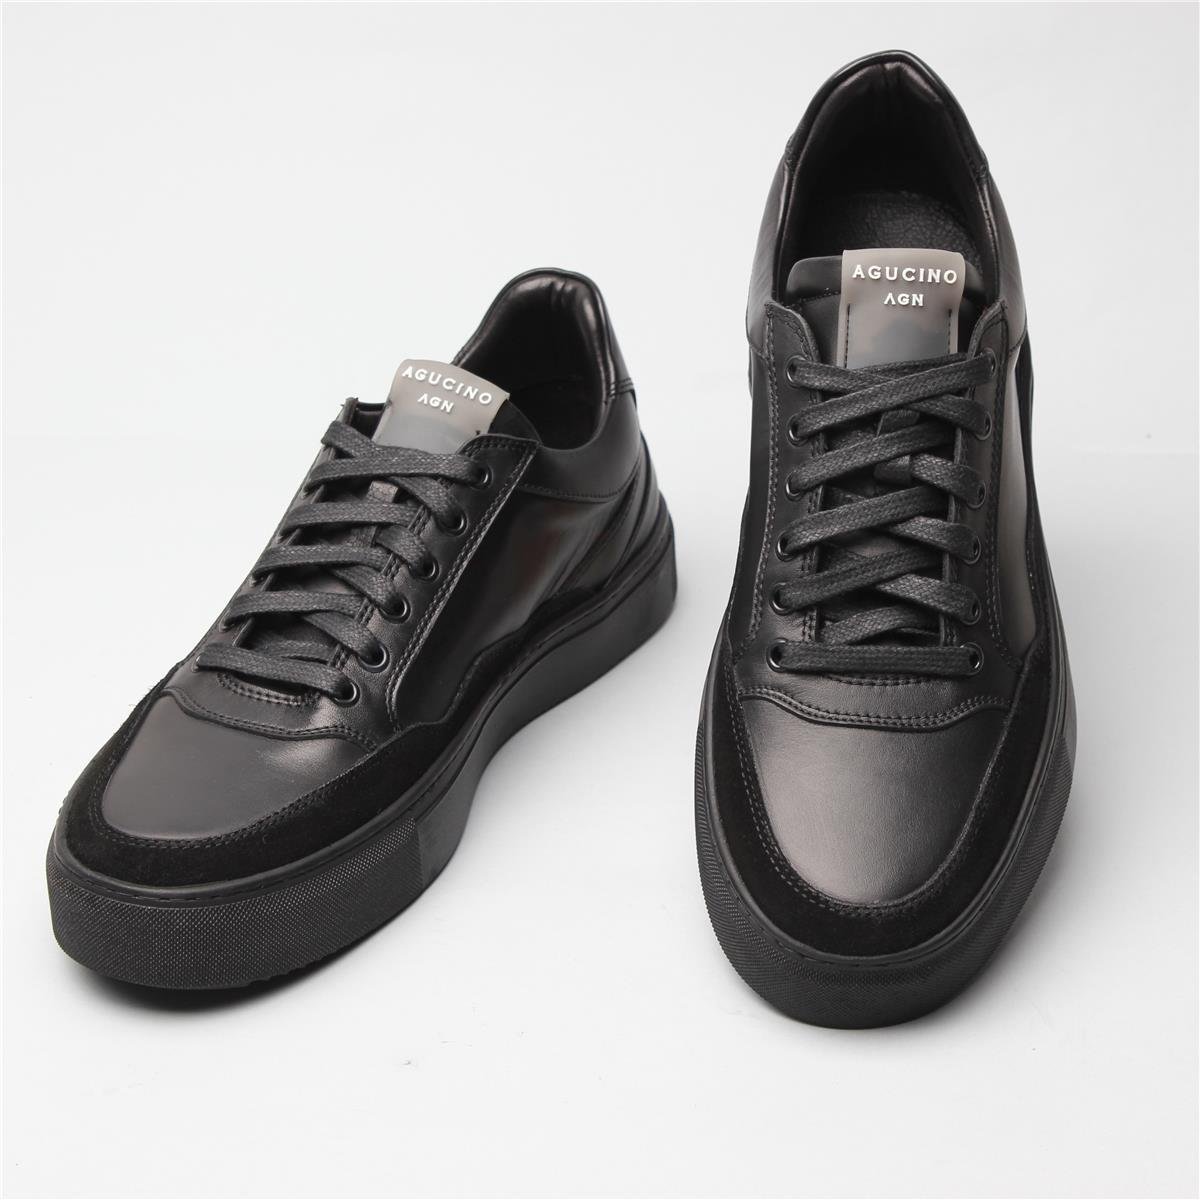 Sneaker Spor Ayakkabı Modelleri - Agucino